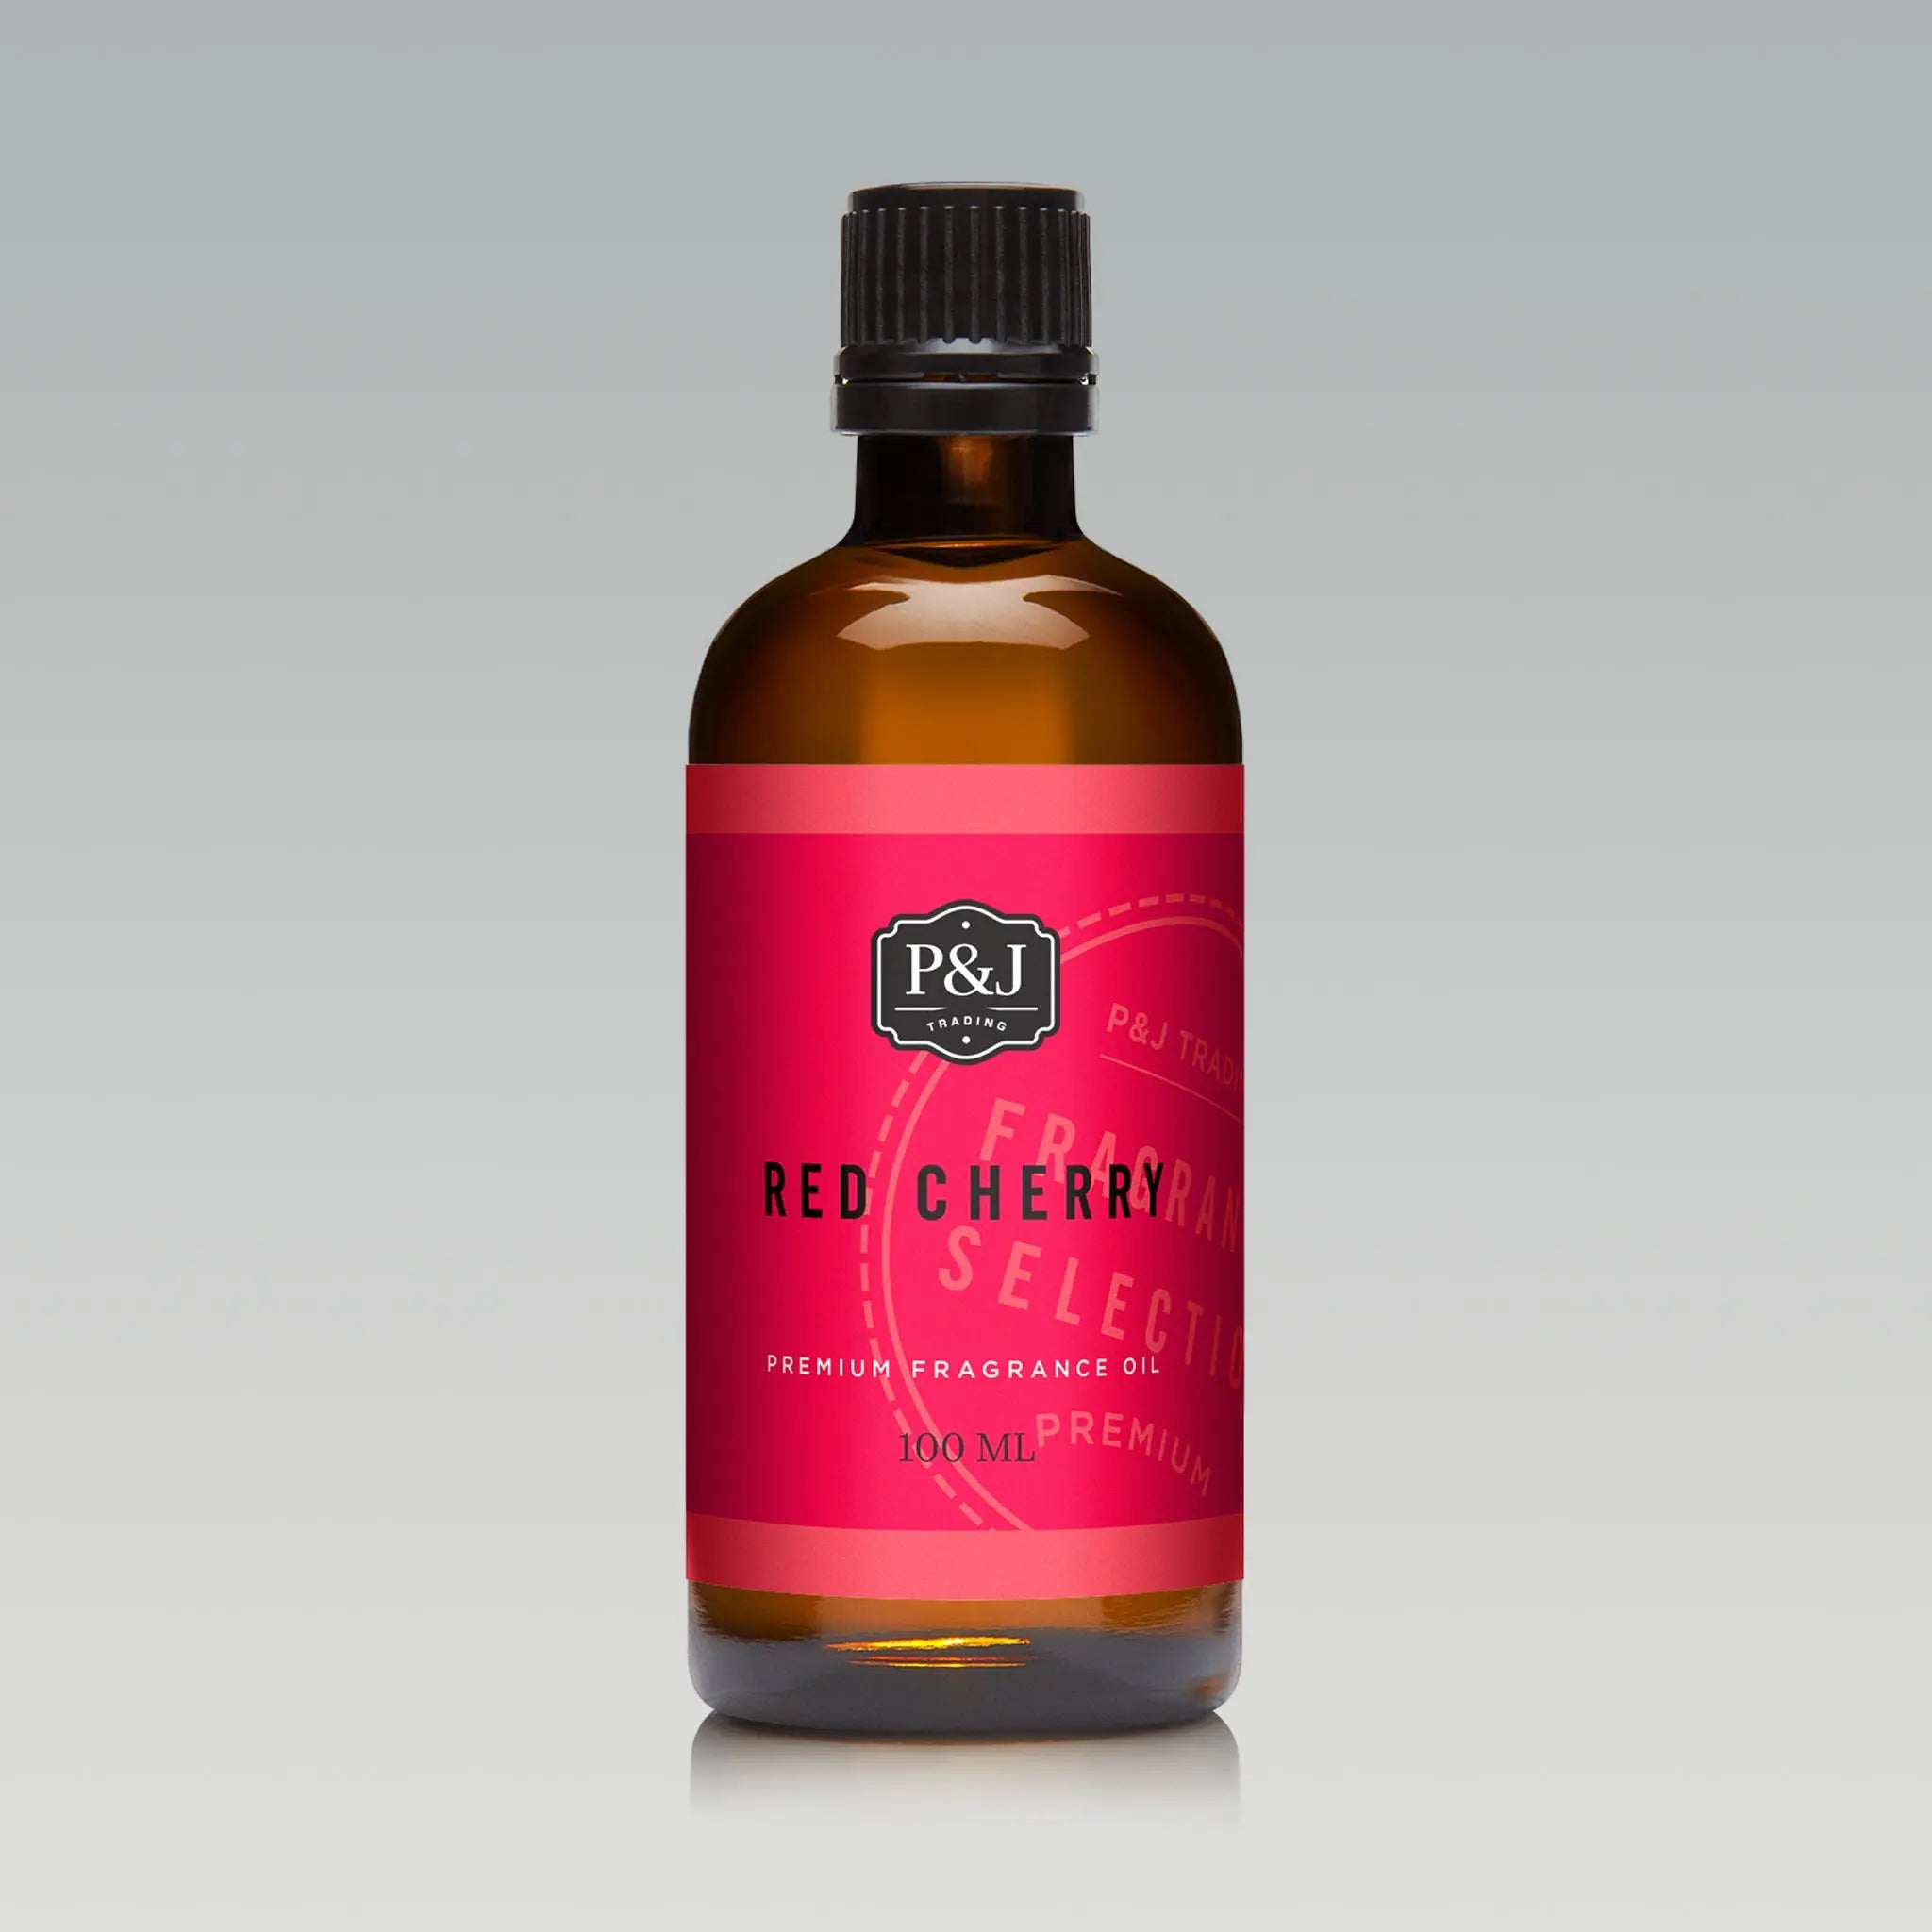 Red Cherry Fragrance Oil